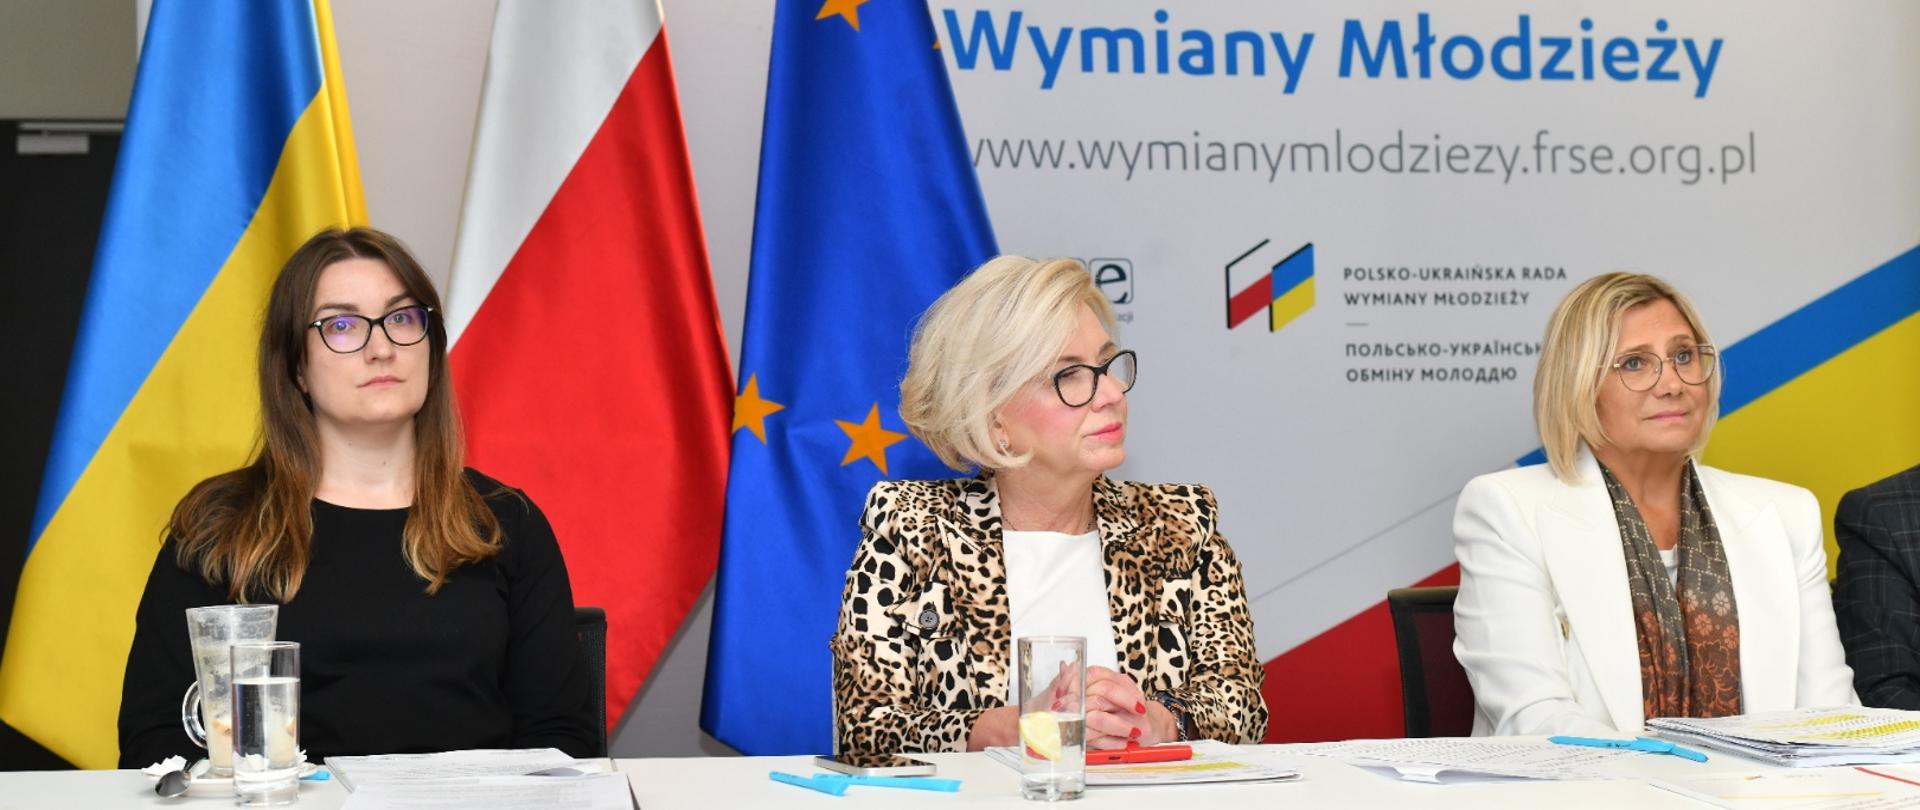 Przy białym stole siedzi wiceminister Machałek w marynarce w brązowo-żółto-biały wzorek, kobieta w białej marynarce i kobieta w czarnym ubraniu, za nimi flagi Polski, Ukrainy i UE, za nimi na ściance napis Polsko-Ukraińska Rada Wymiany Młodzieży.